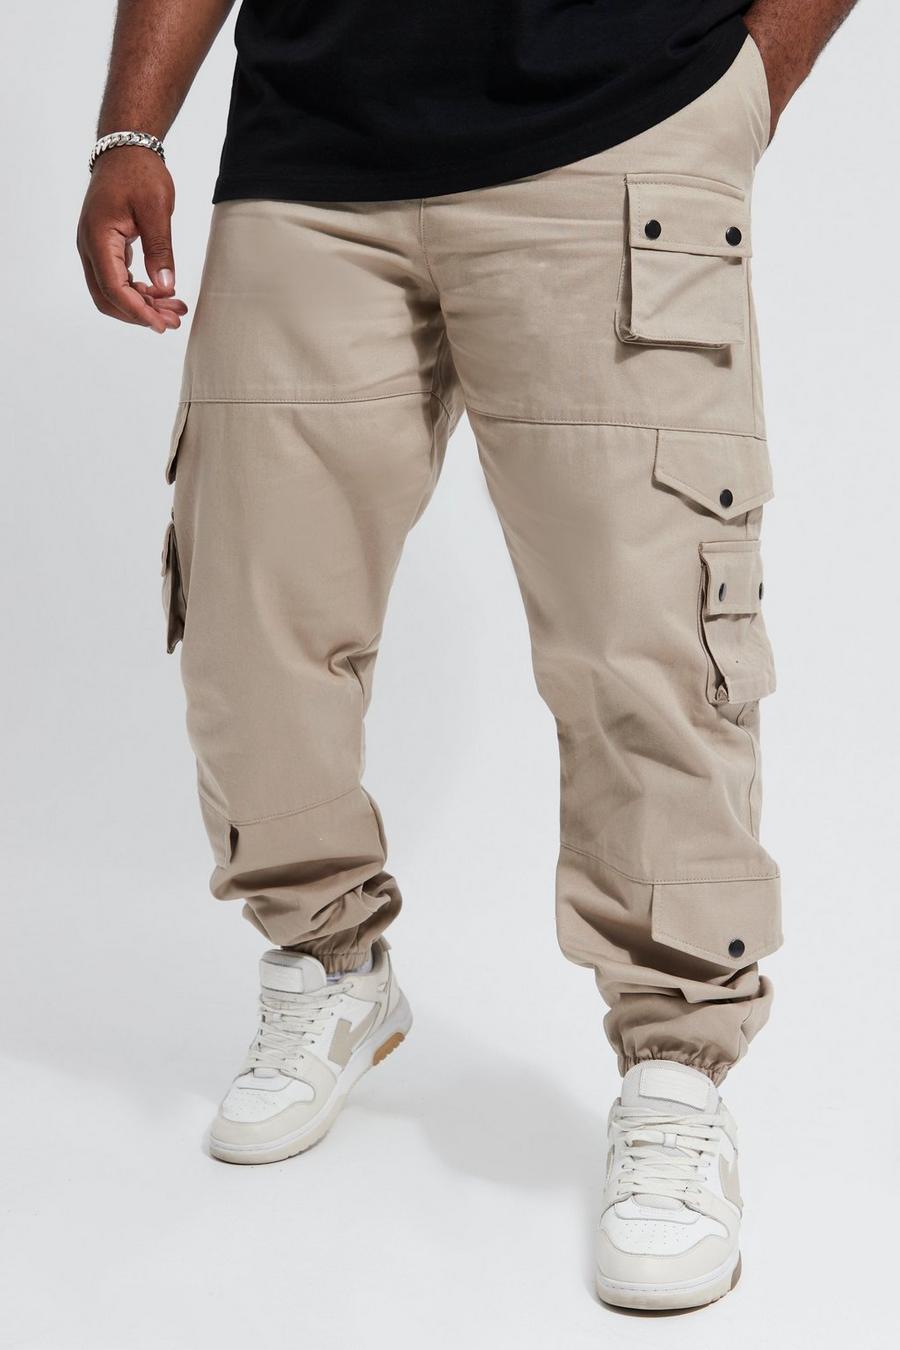 שמנת bianco מכנסי דגמ'ח עם כיסים מרובים למידות גדולות